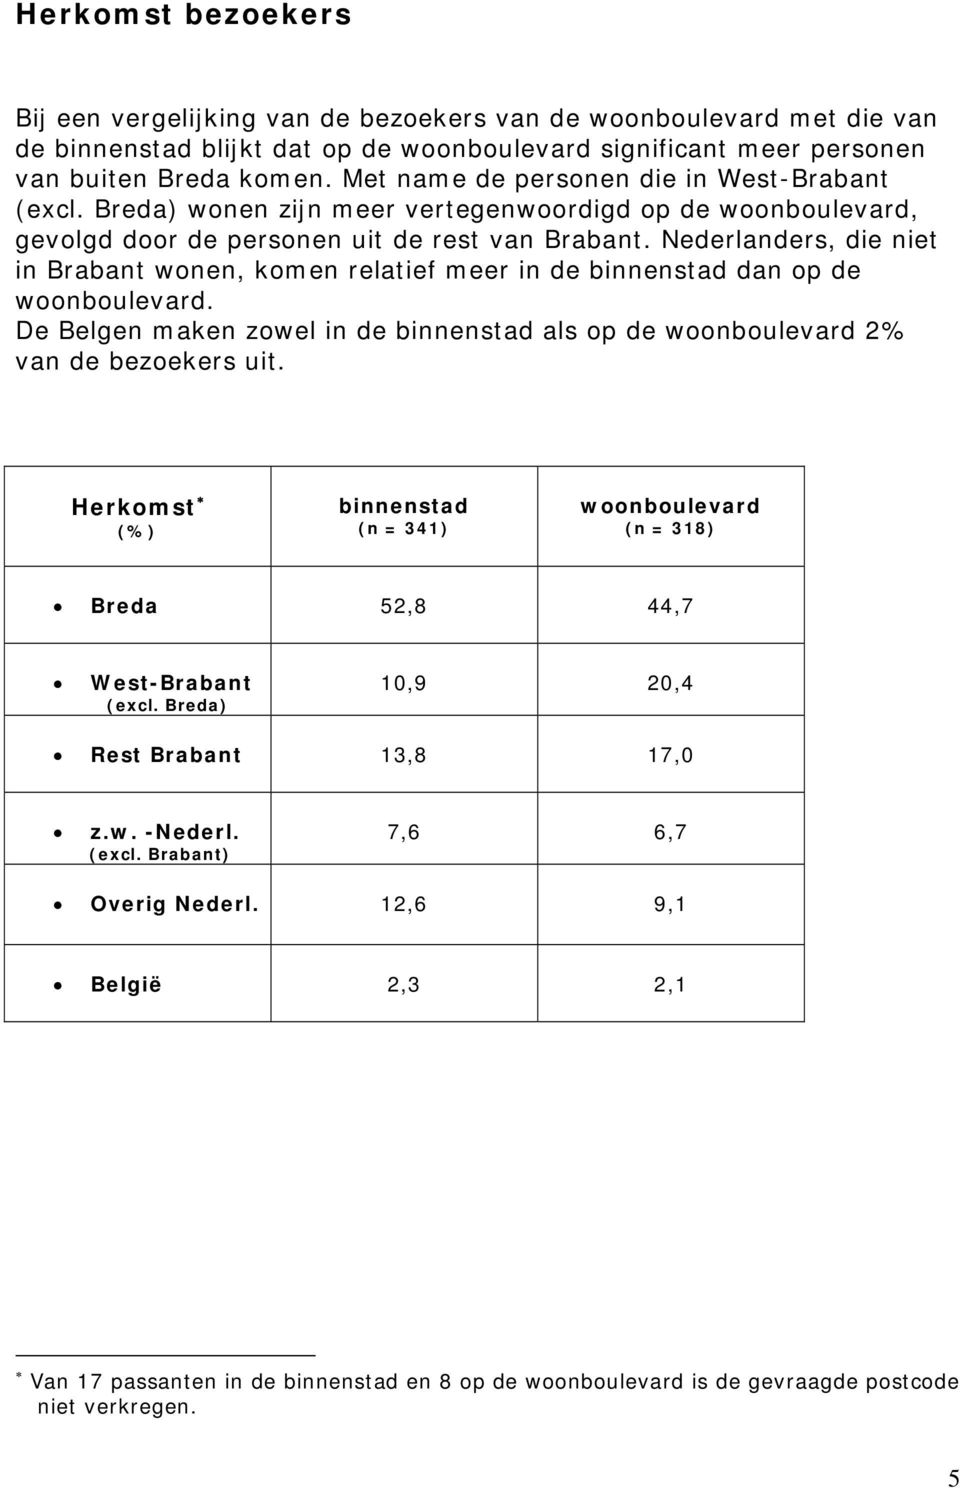 Nederlanders, die niet in Brabant wonen, komen relatief meer in de binnenstad dan op de woonboulevard. De Belgen maken zowel in de binnenstad als op de woonboulevard 2% van de bezoekers uit.